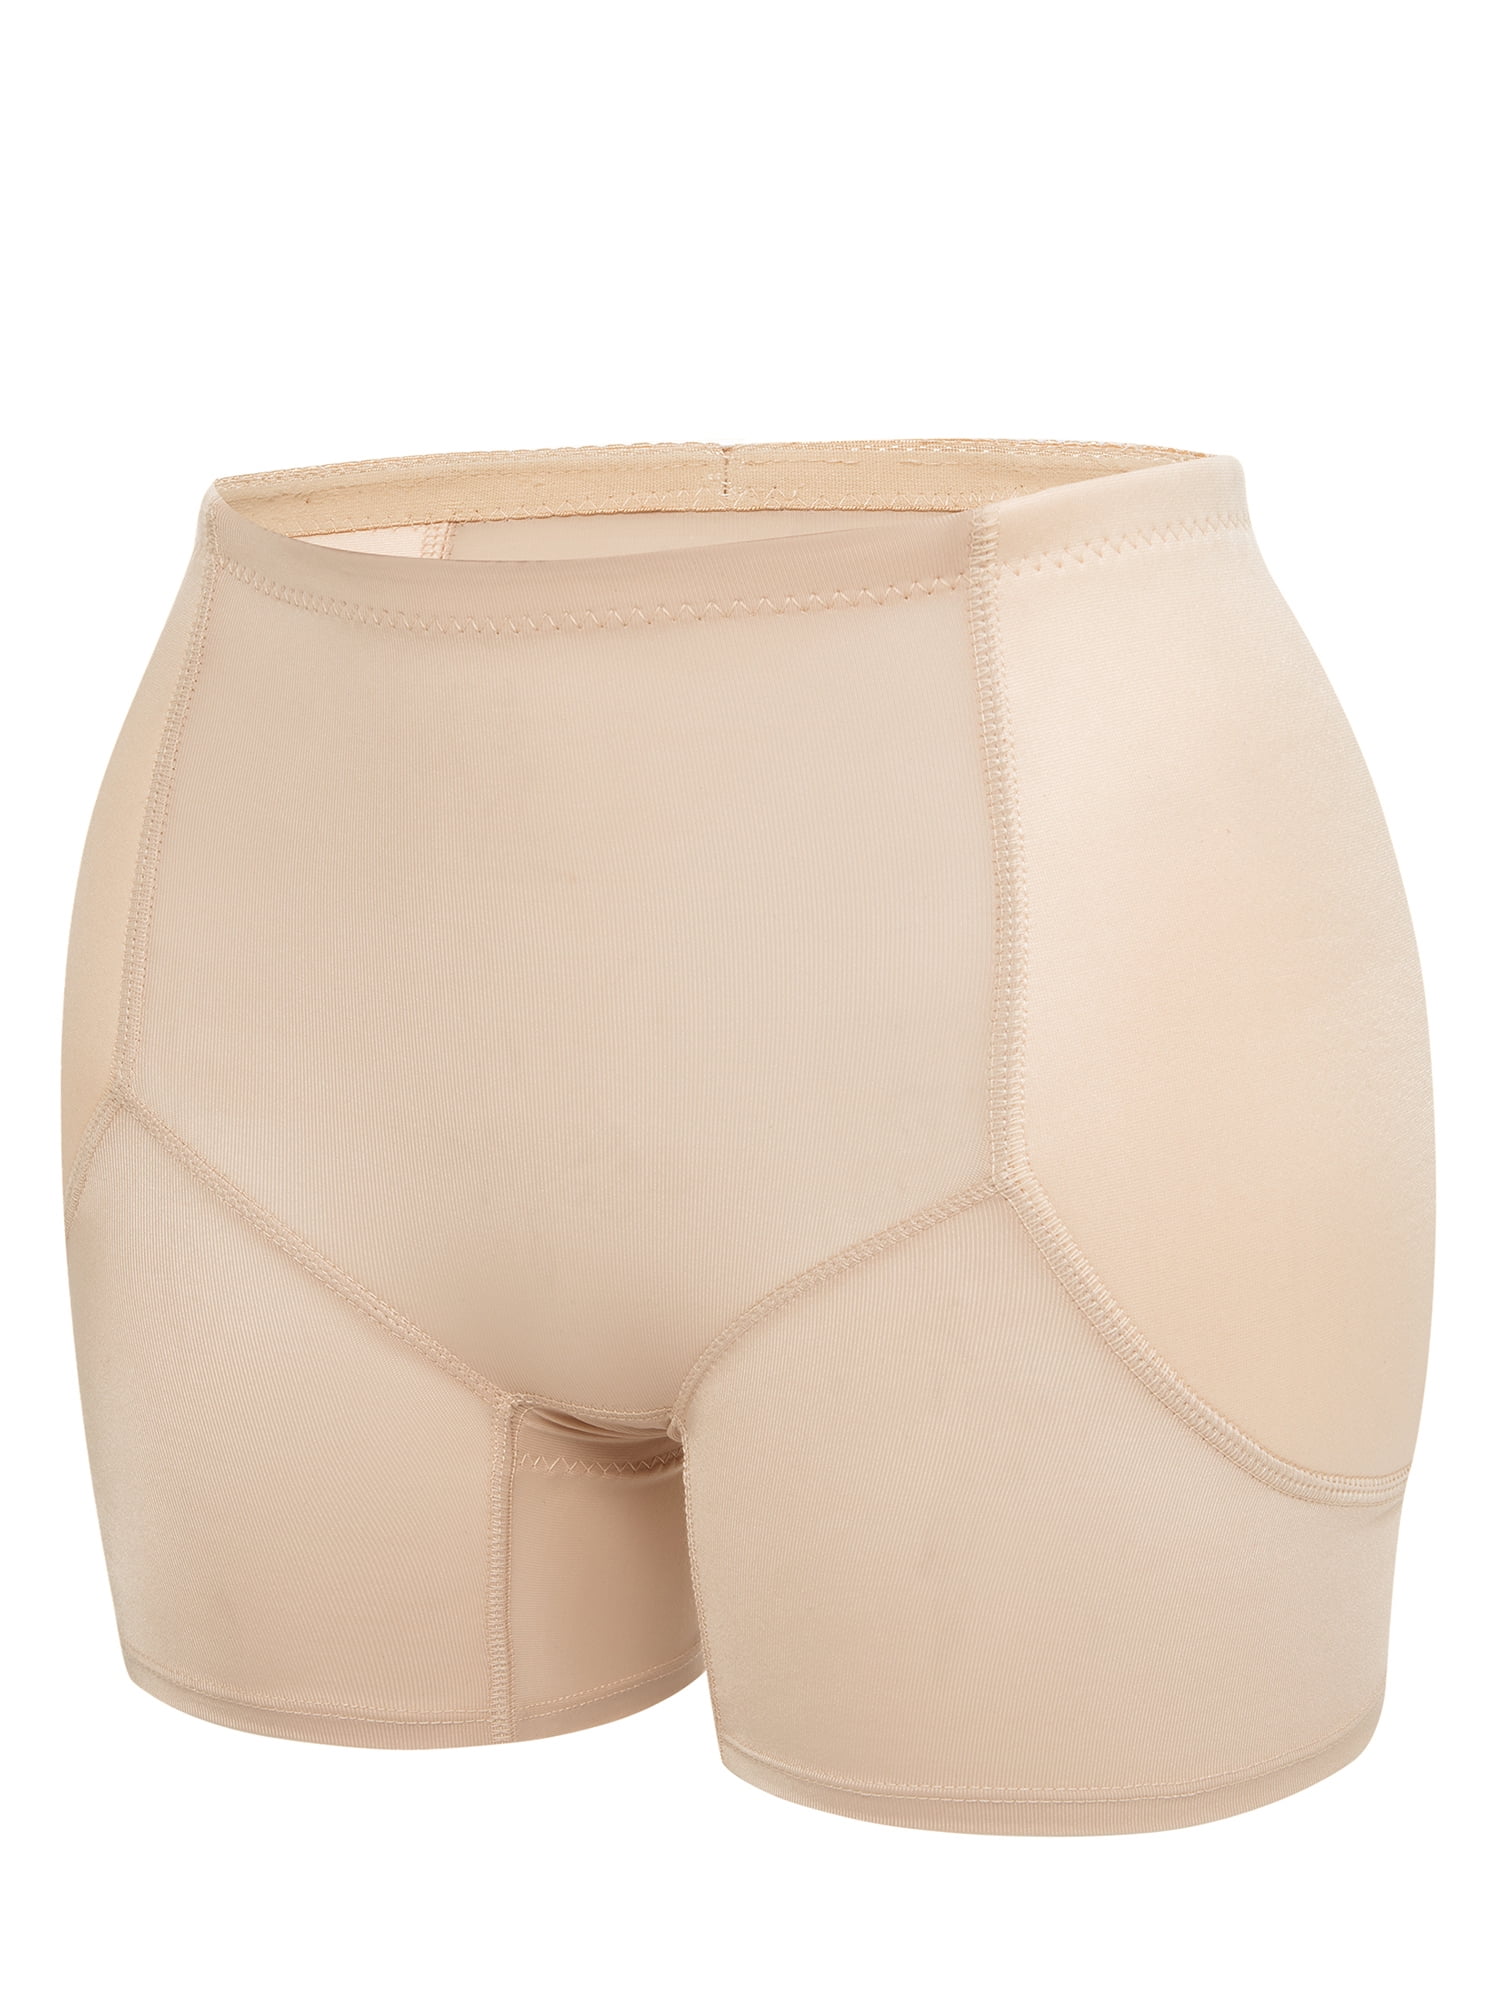 Padded Women's Hip Enhancer High Waisted Tummy Control Butt Lifter Pan –  WOW Shapers